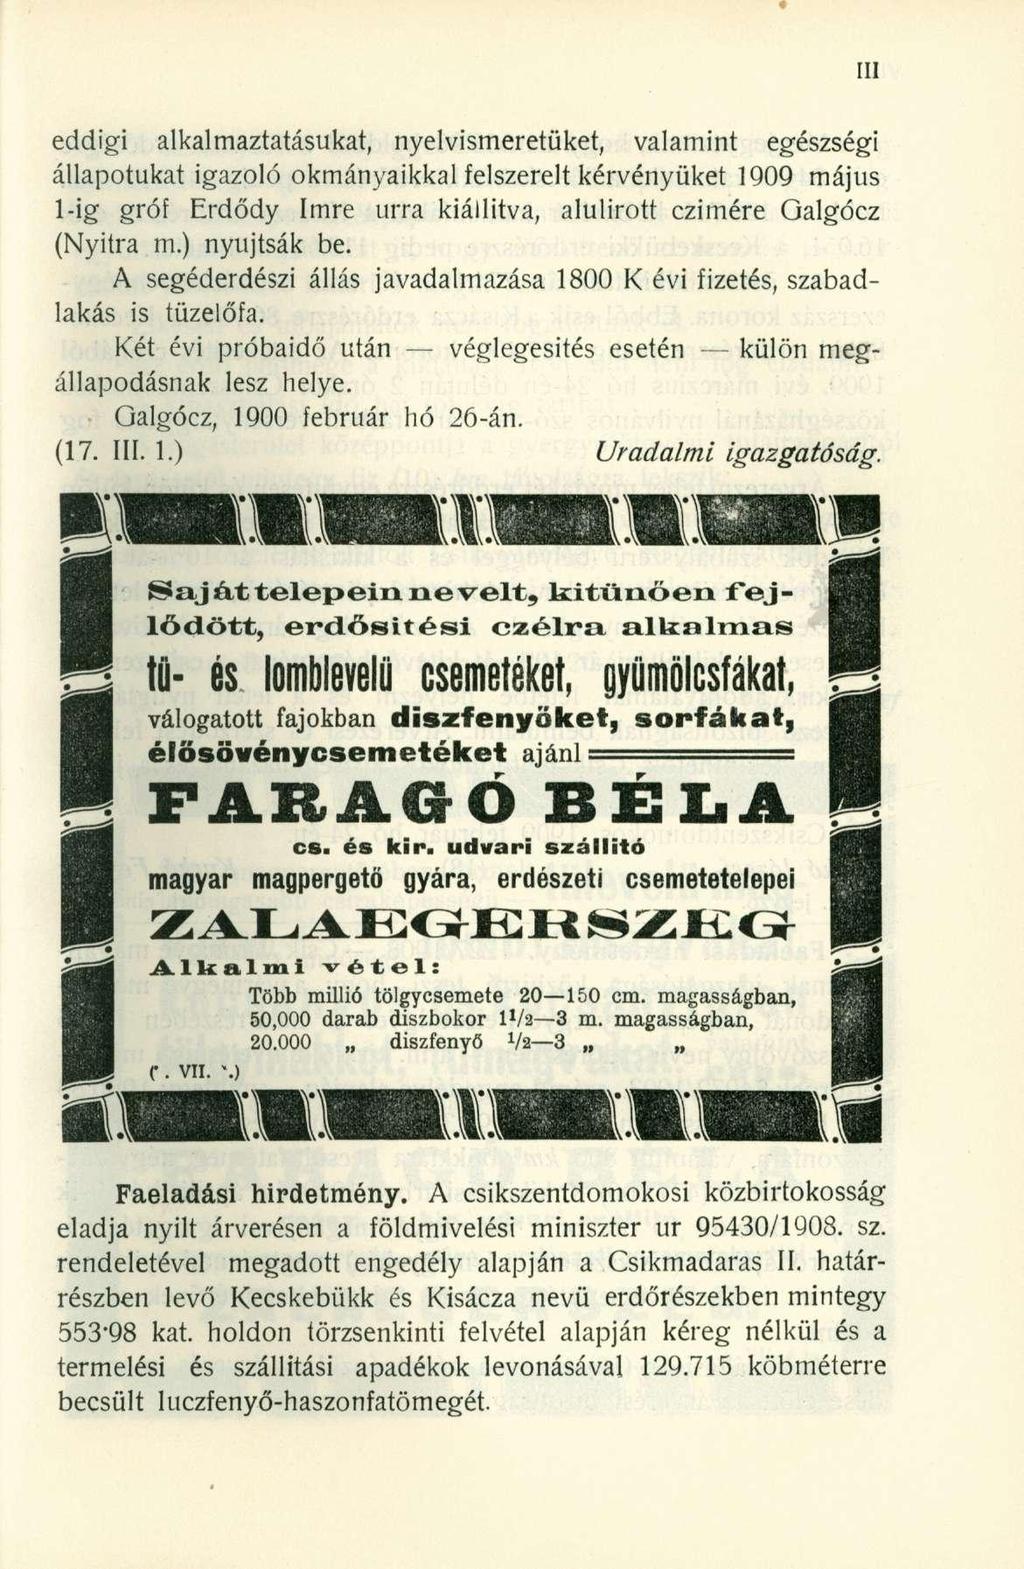 eddigi alkalmaztatásukat, nyelvismeretüket, valamint egészségi állapotukat igazoló okmányaikkal felszerelt kérvényüket 1909 május l-ig gróf Erdődy Imre úrra kiállítva, alulírott czimére Galgócz